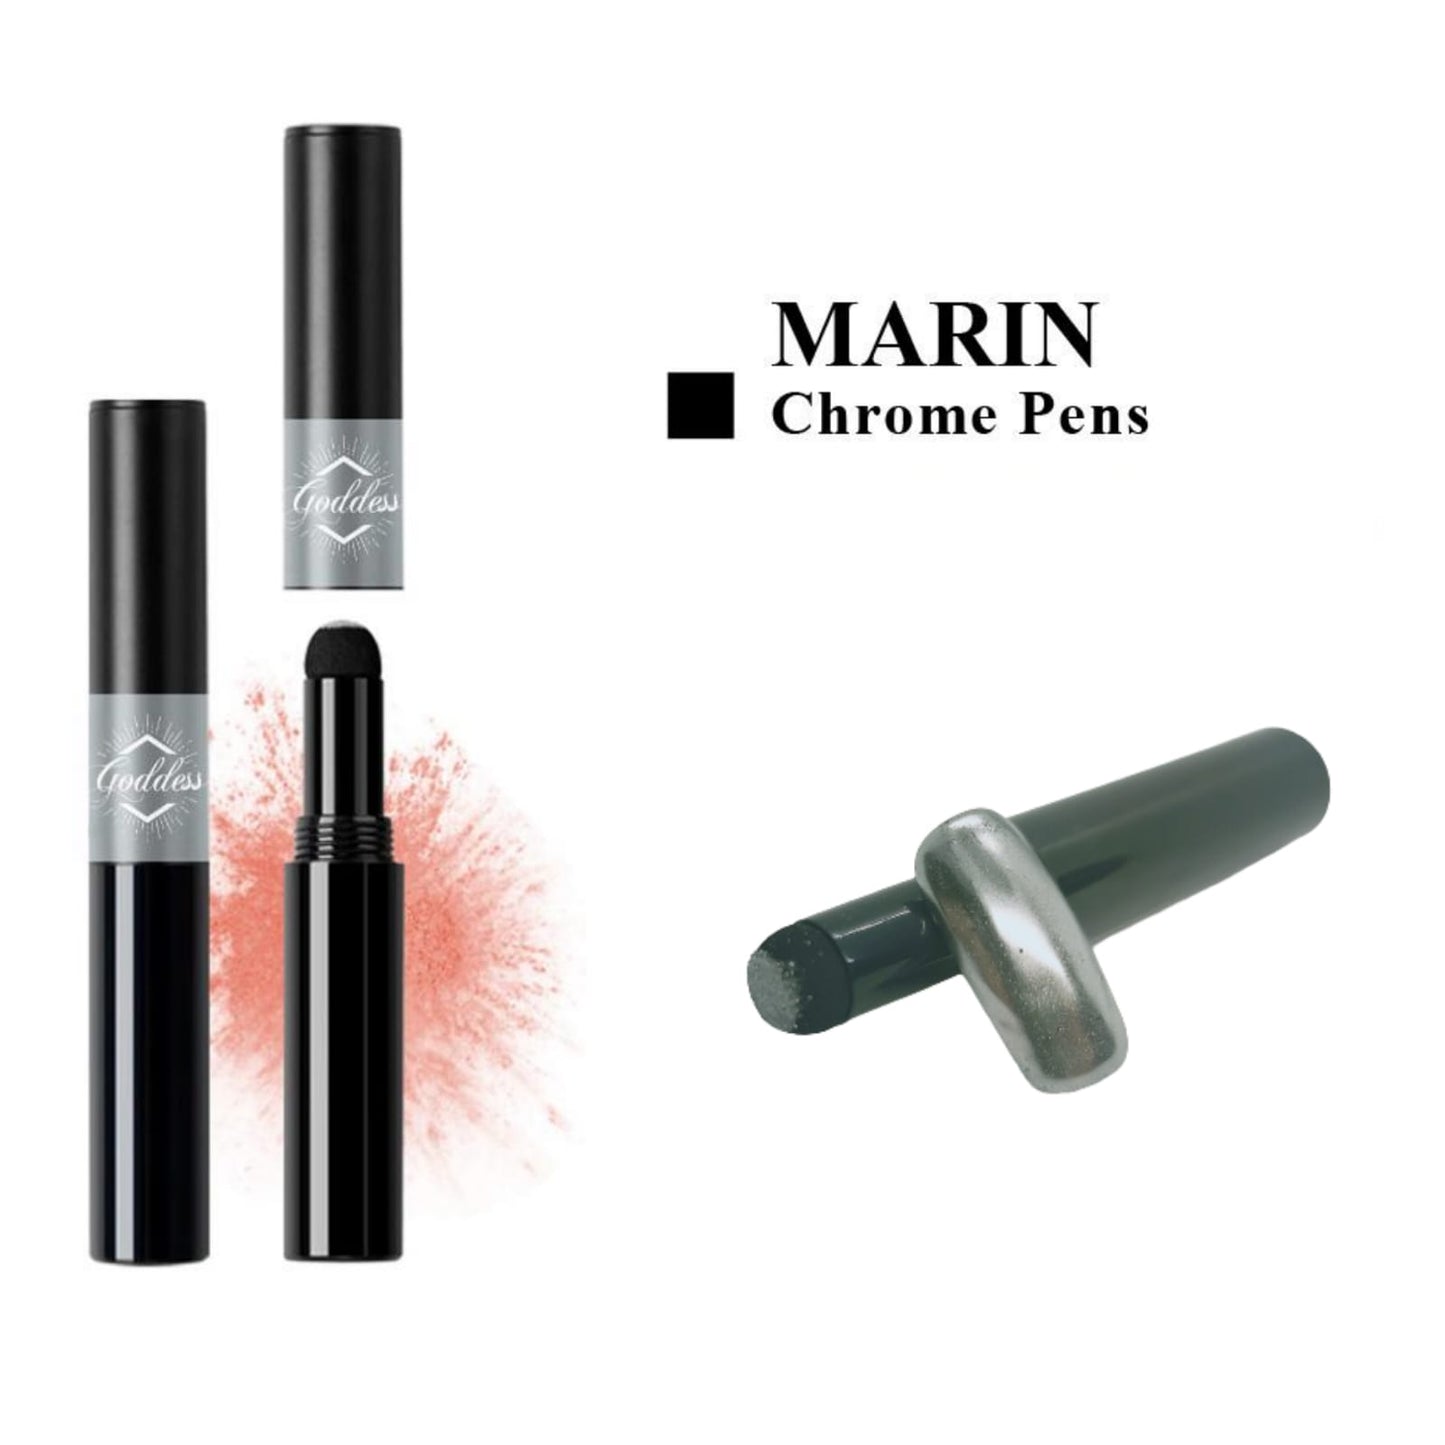 Goddess Chrome Pen Marin